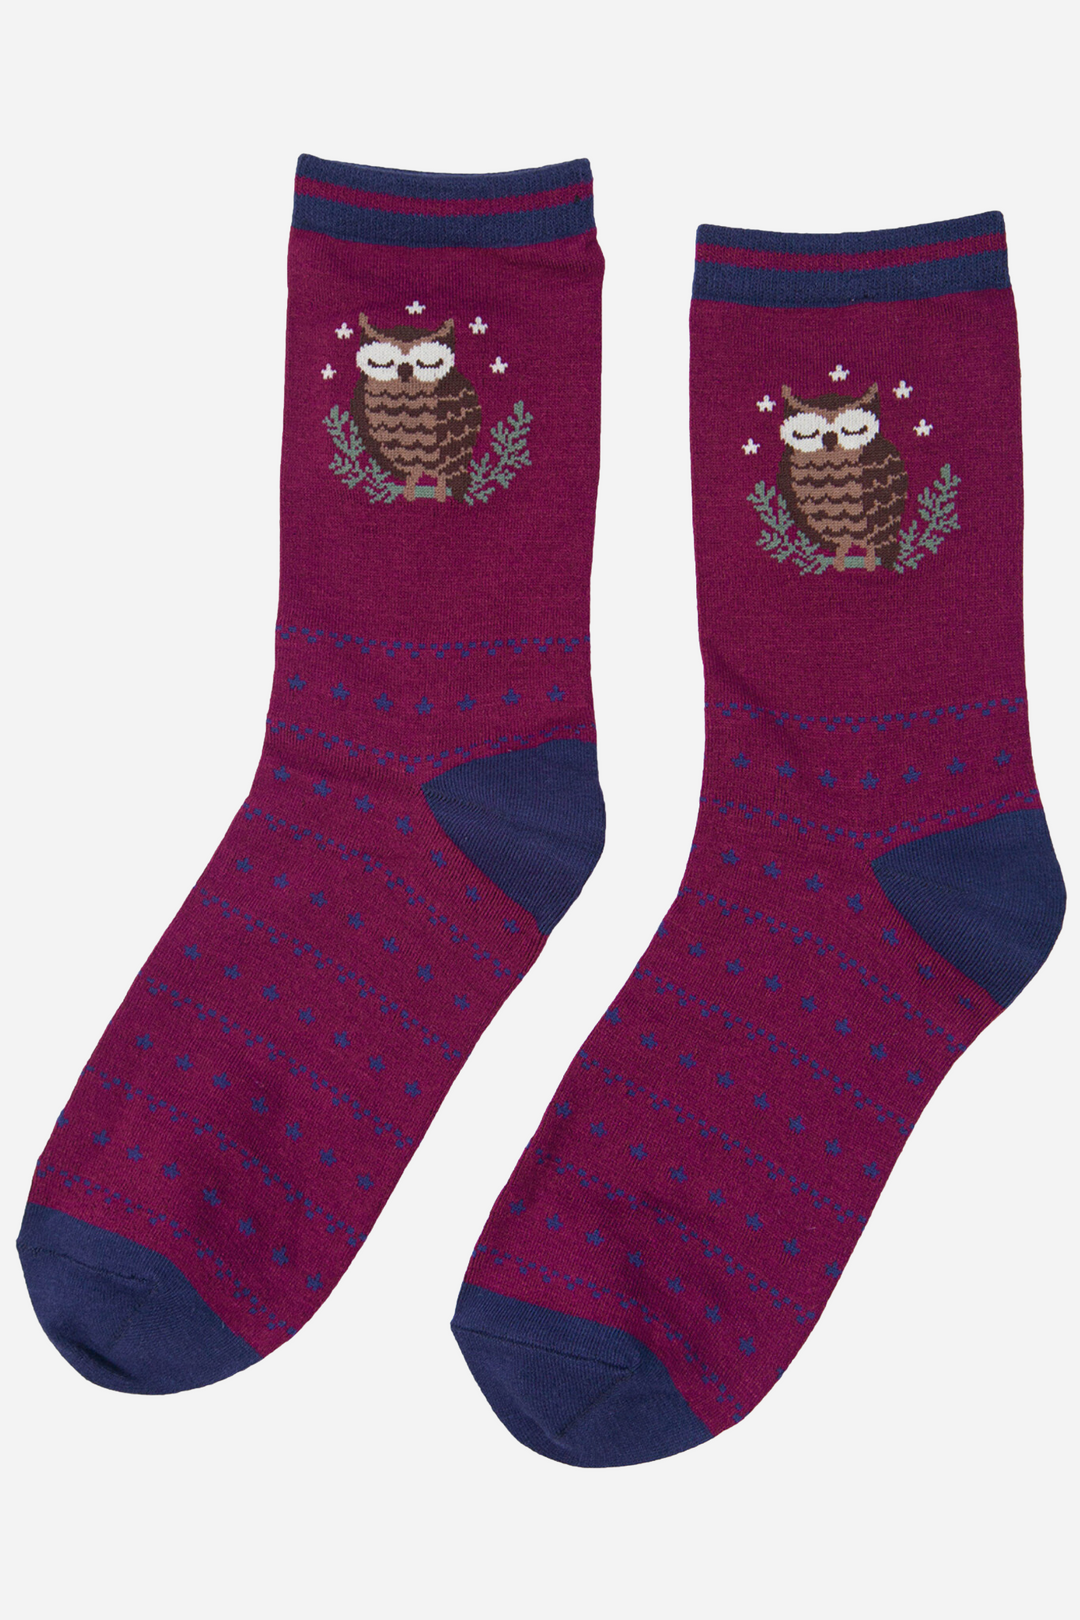 Women's Bamboo Owl Socks Novelty Bird Print Ankle Socks Burgundy